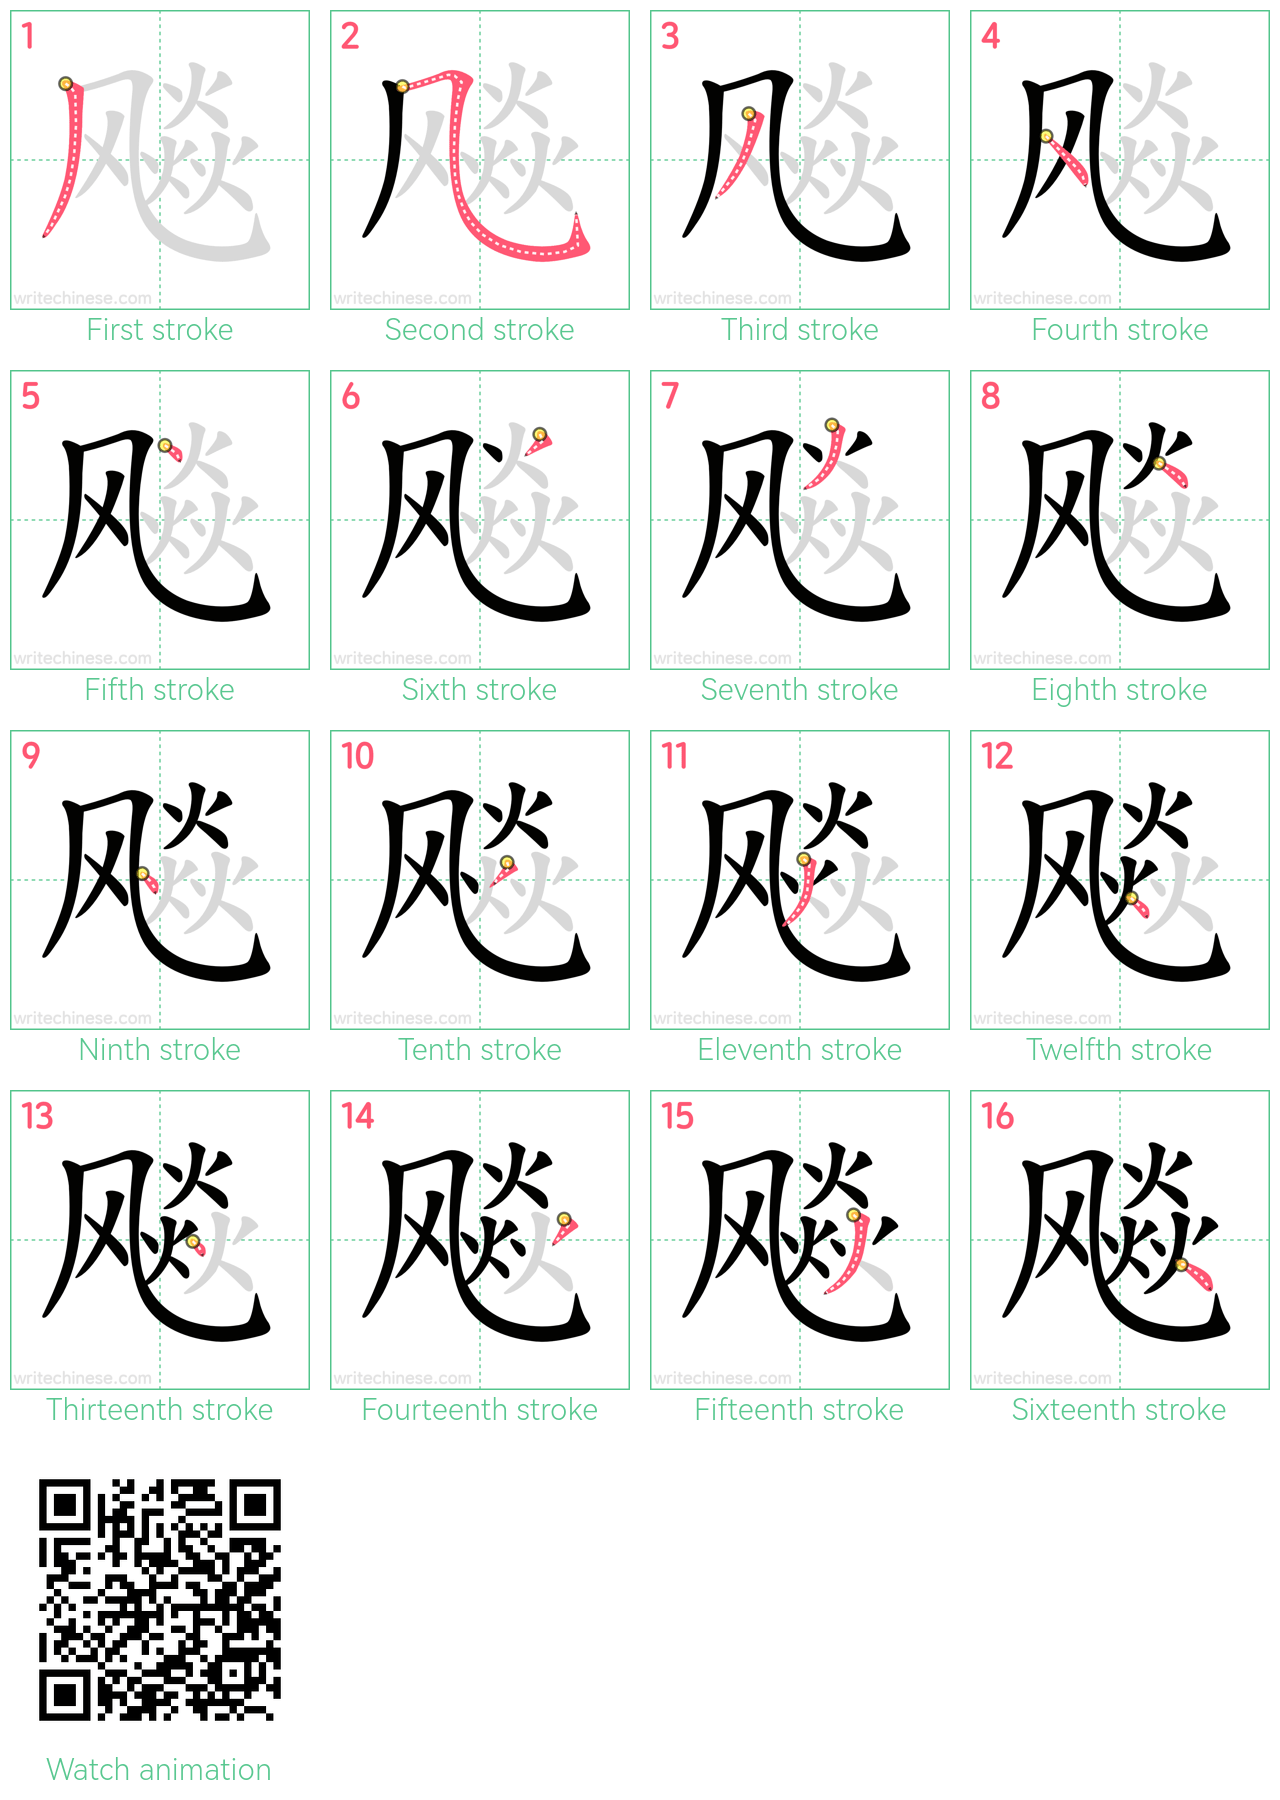 飚 step-by-step stroke order diagrams